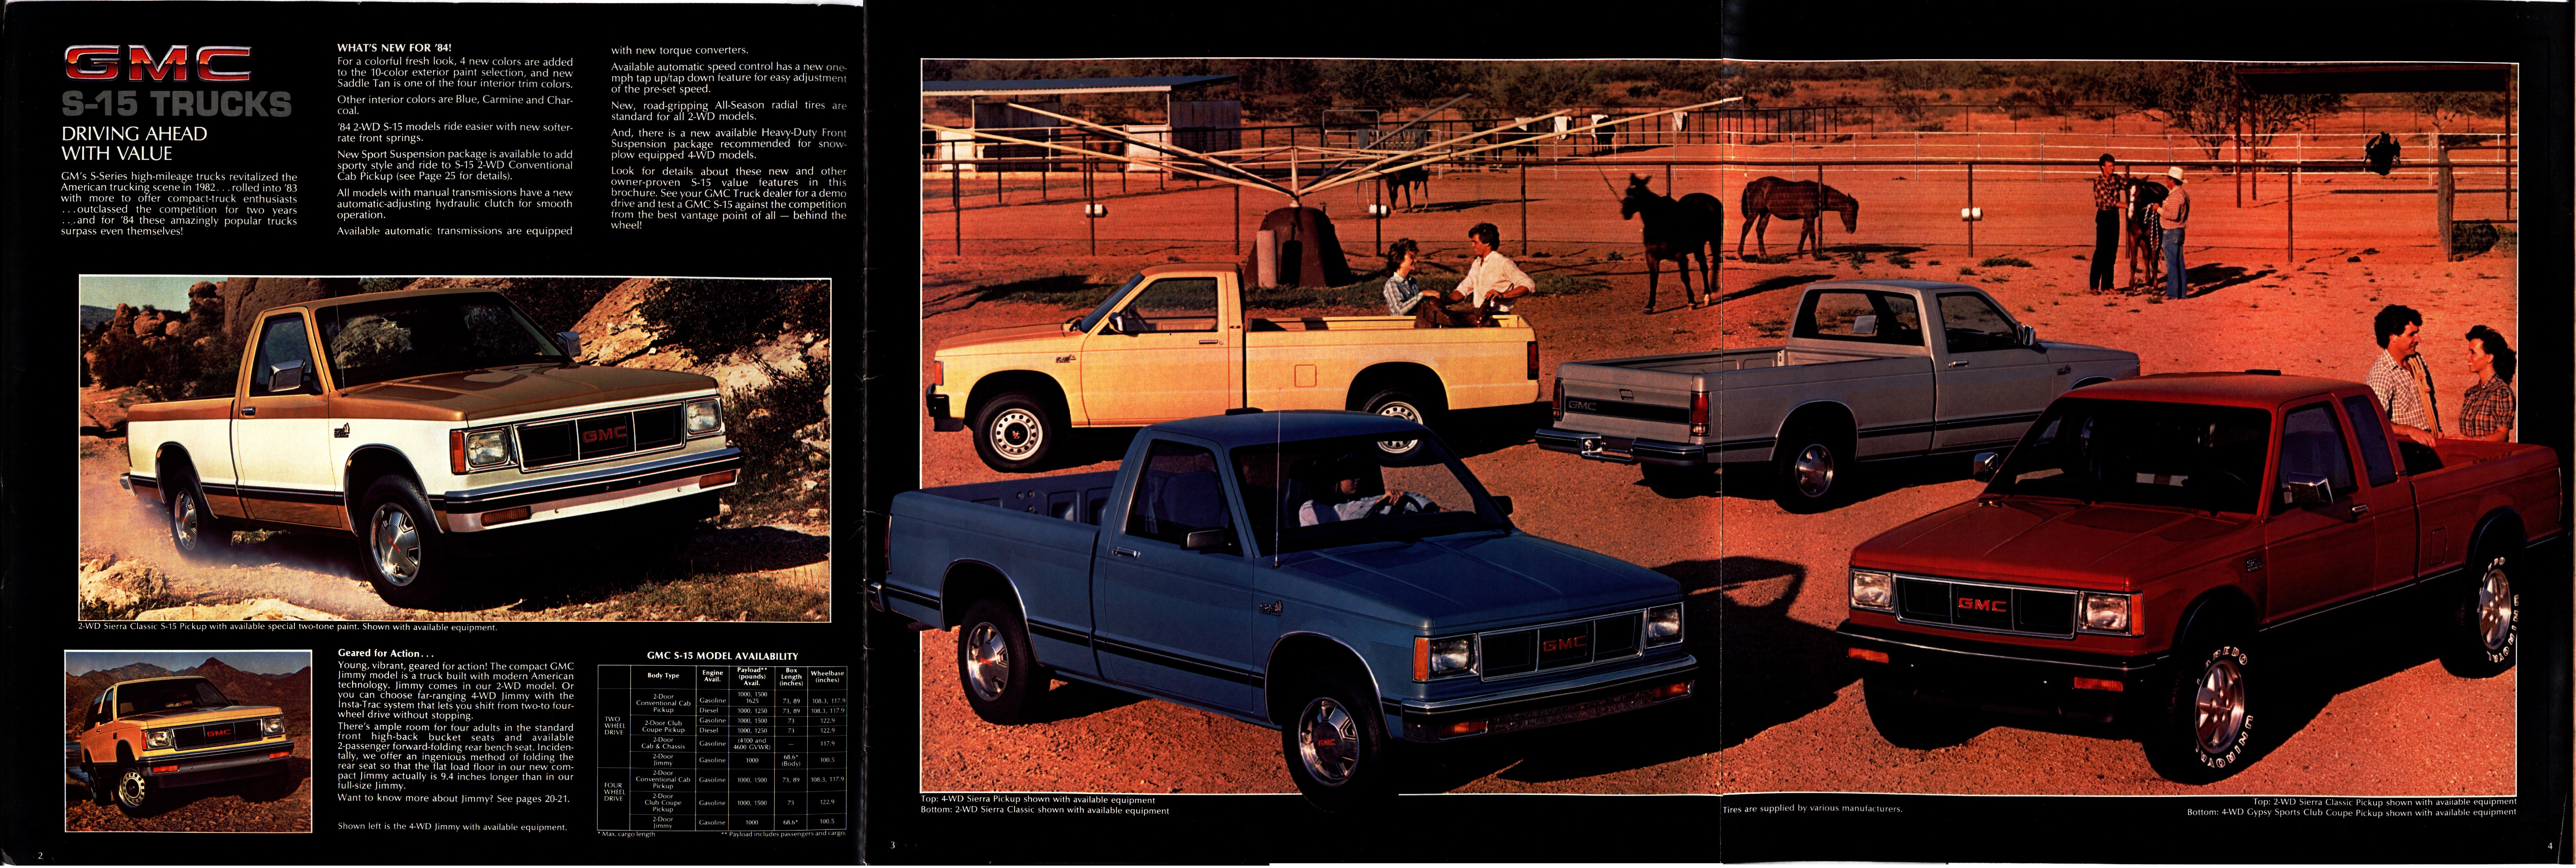 1984 GMC S-15 Pickups Brochure 02-03-04